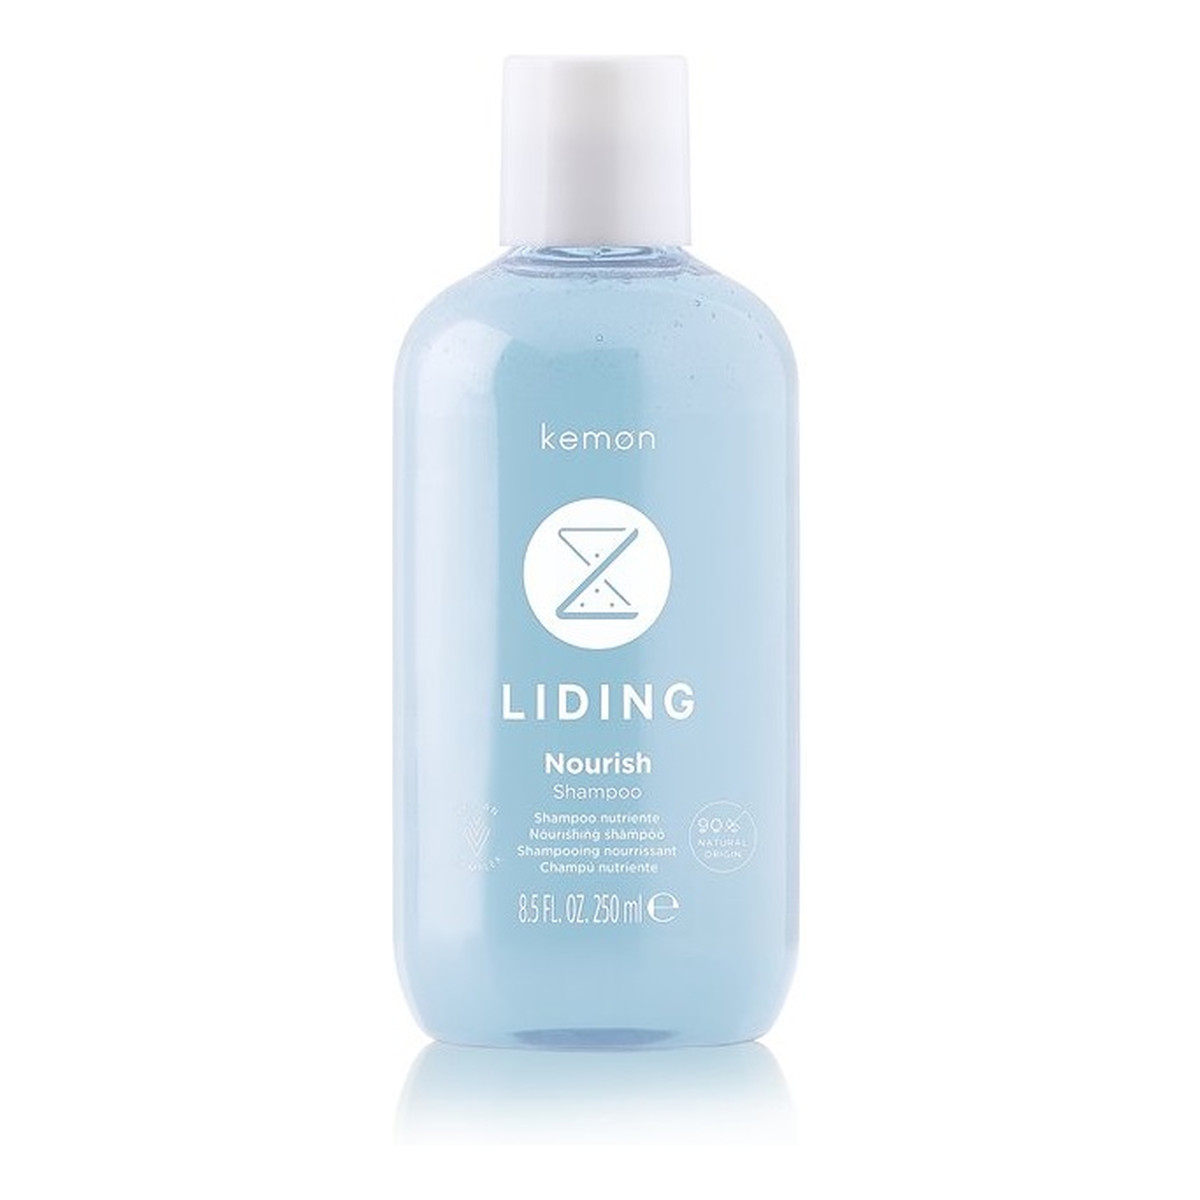 Kemon Liding nourish shampoo odżywczy szampon do włosów 250ml